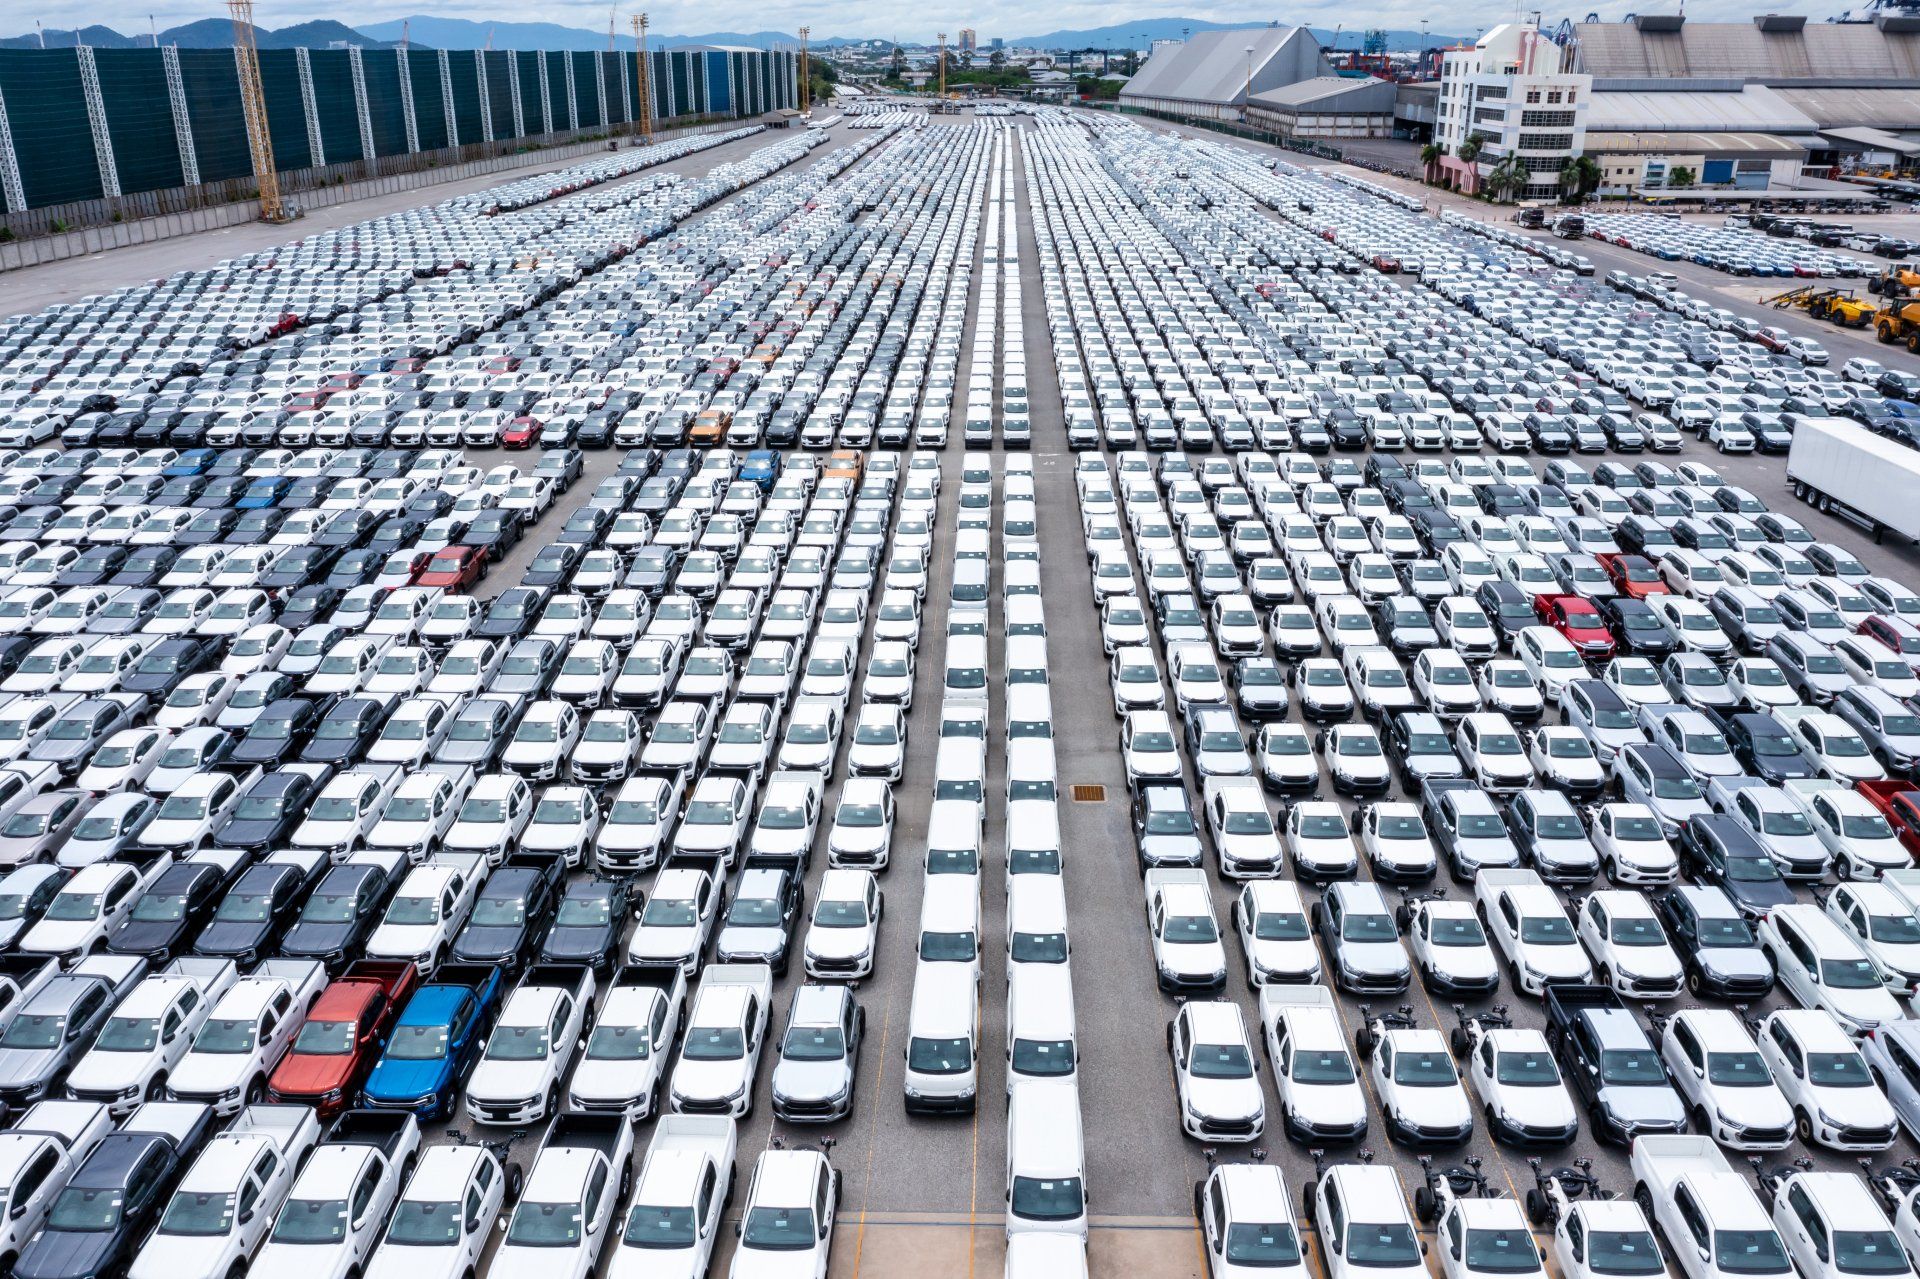 Filas de autos nuevos estacionados en el almacén de la fábrica para distribuidores que comercian